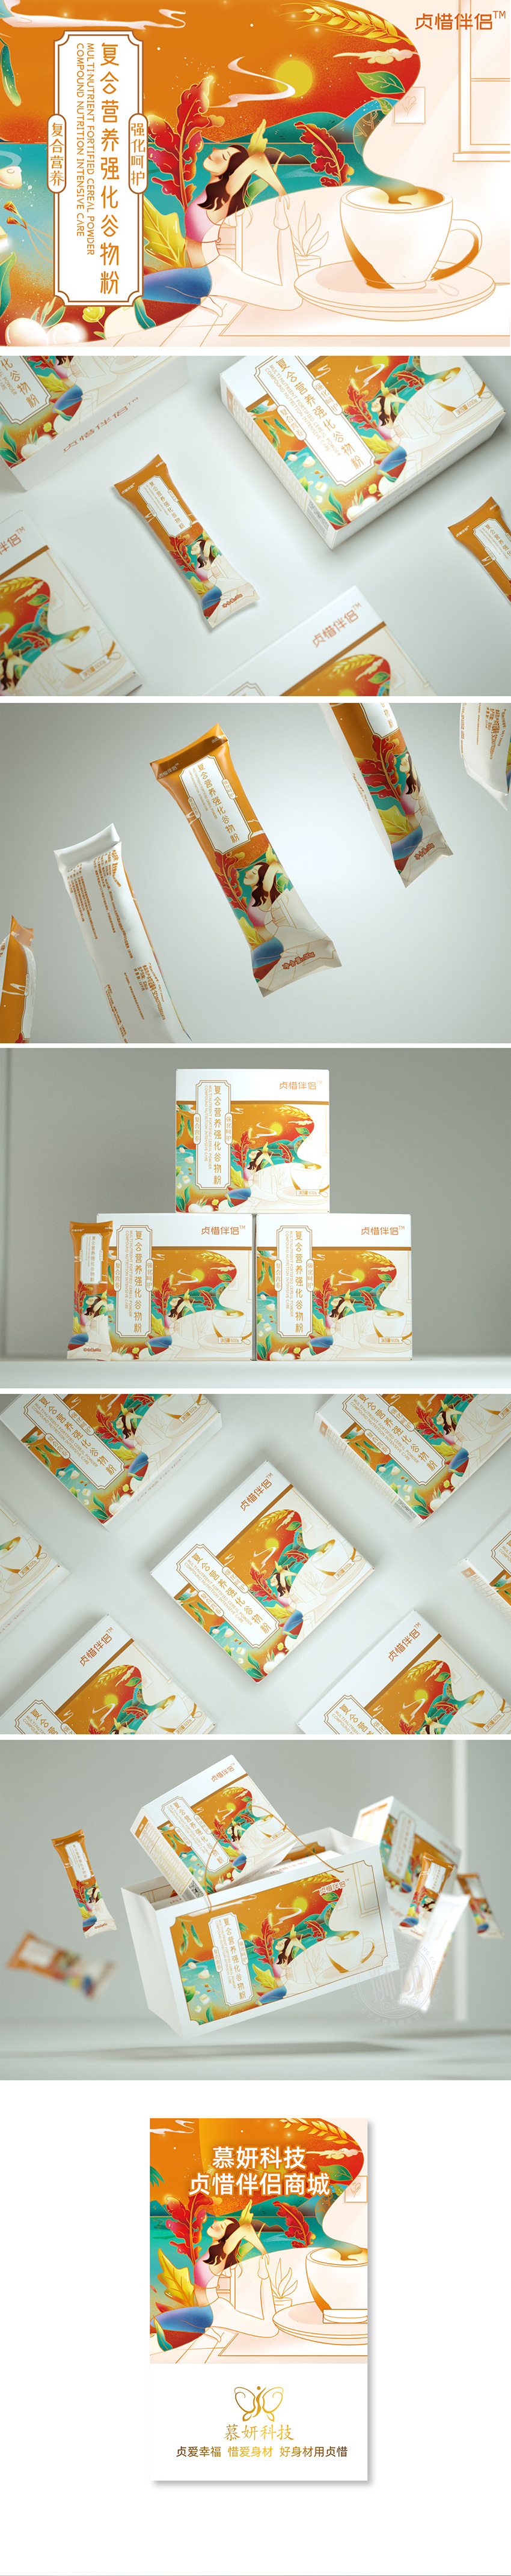 【狮动】代餐粉插画包装原创手绘时尚插画食品包装设计